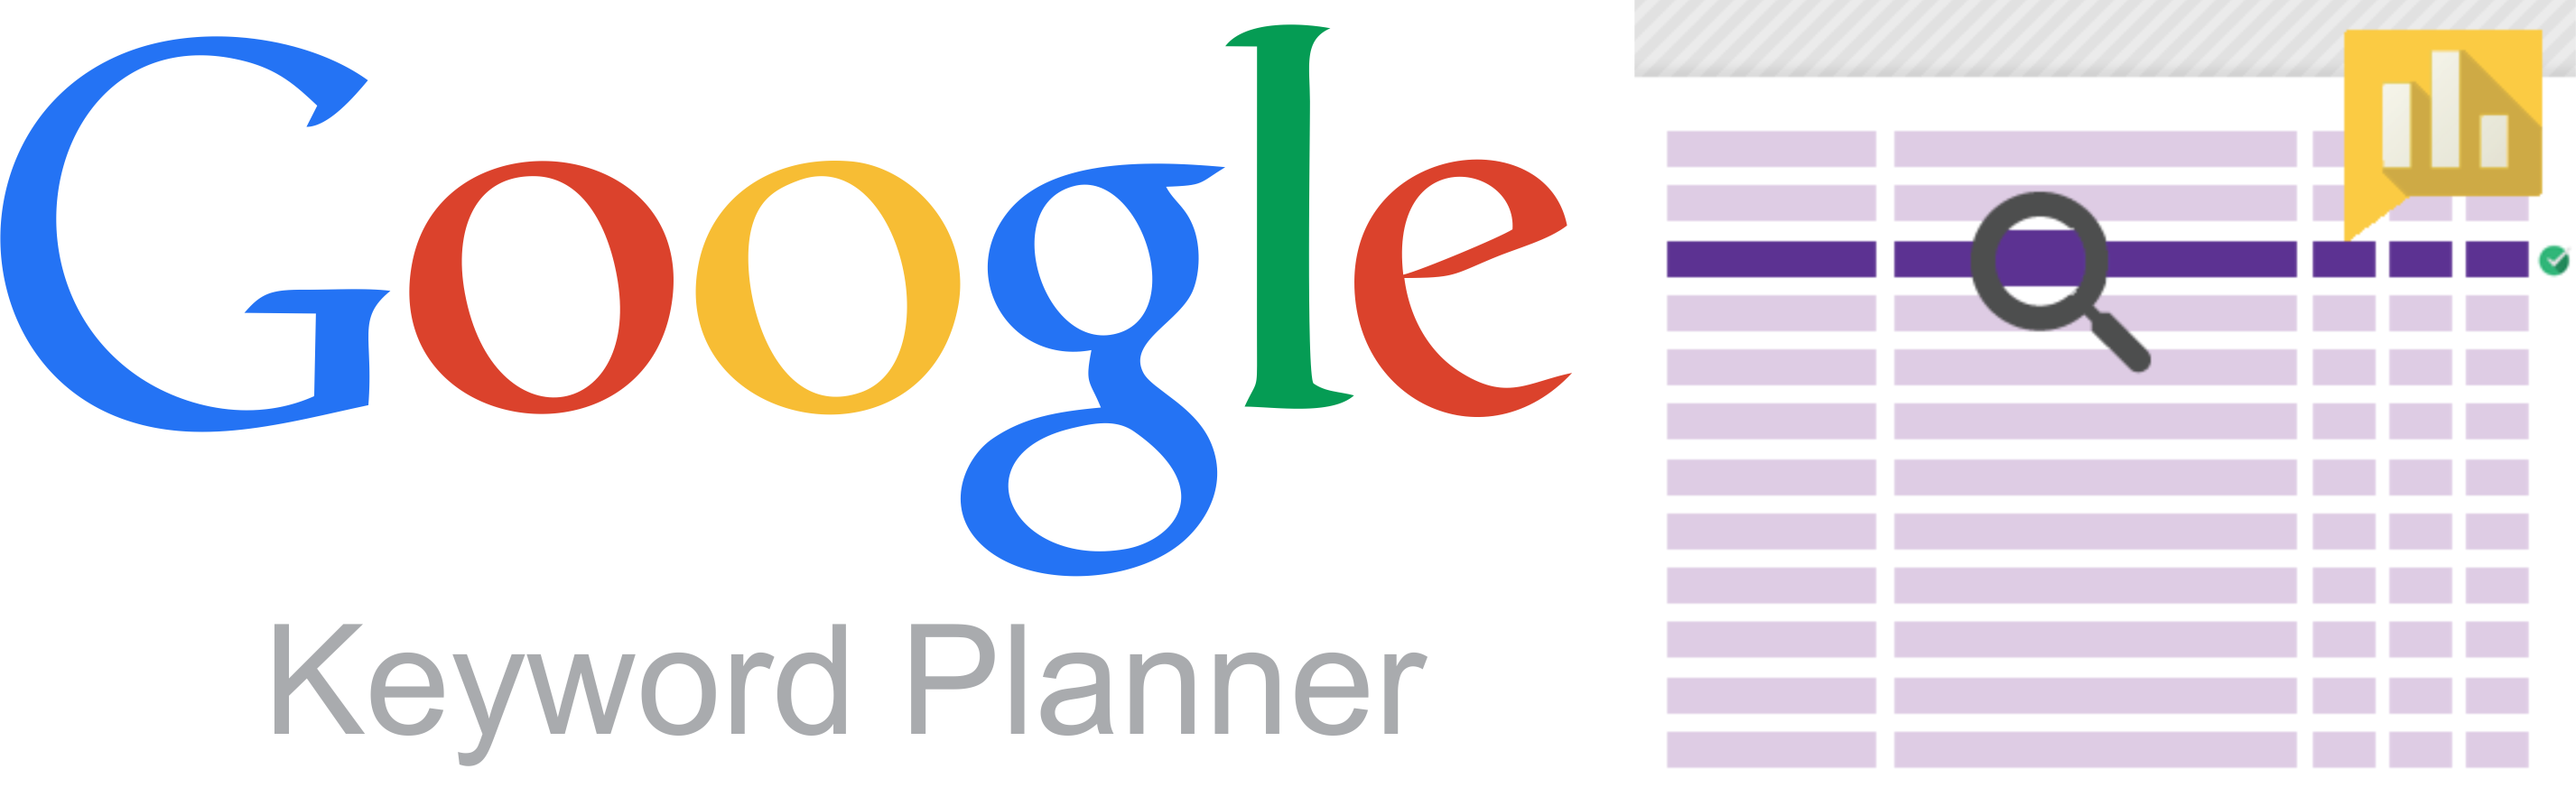 Keyword-planner4 - Google Keyword Planner Logo Png Clipart (2853x883), Png Download